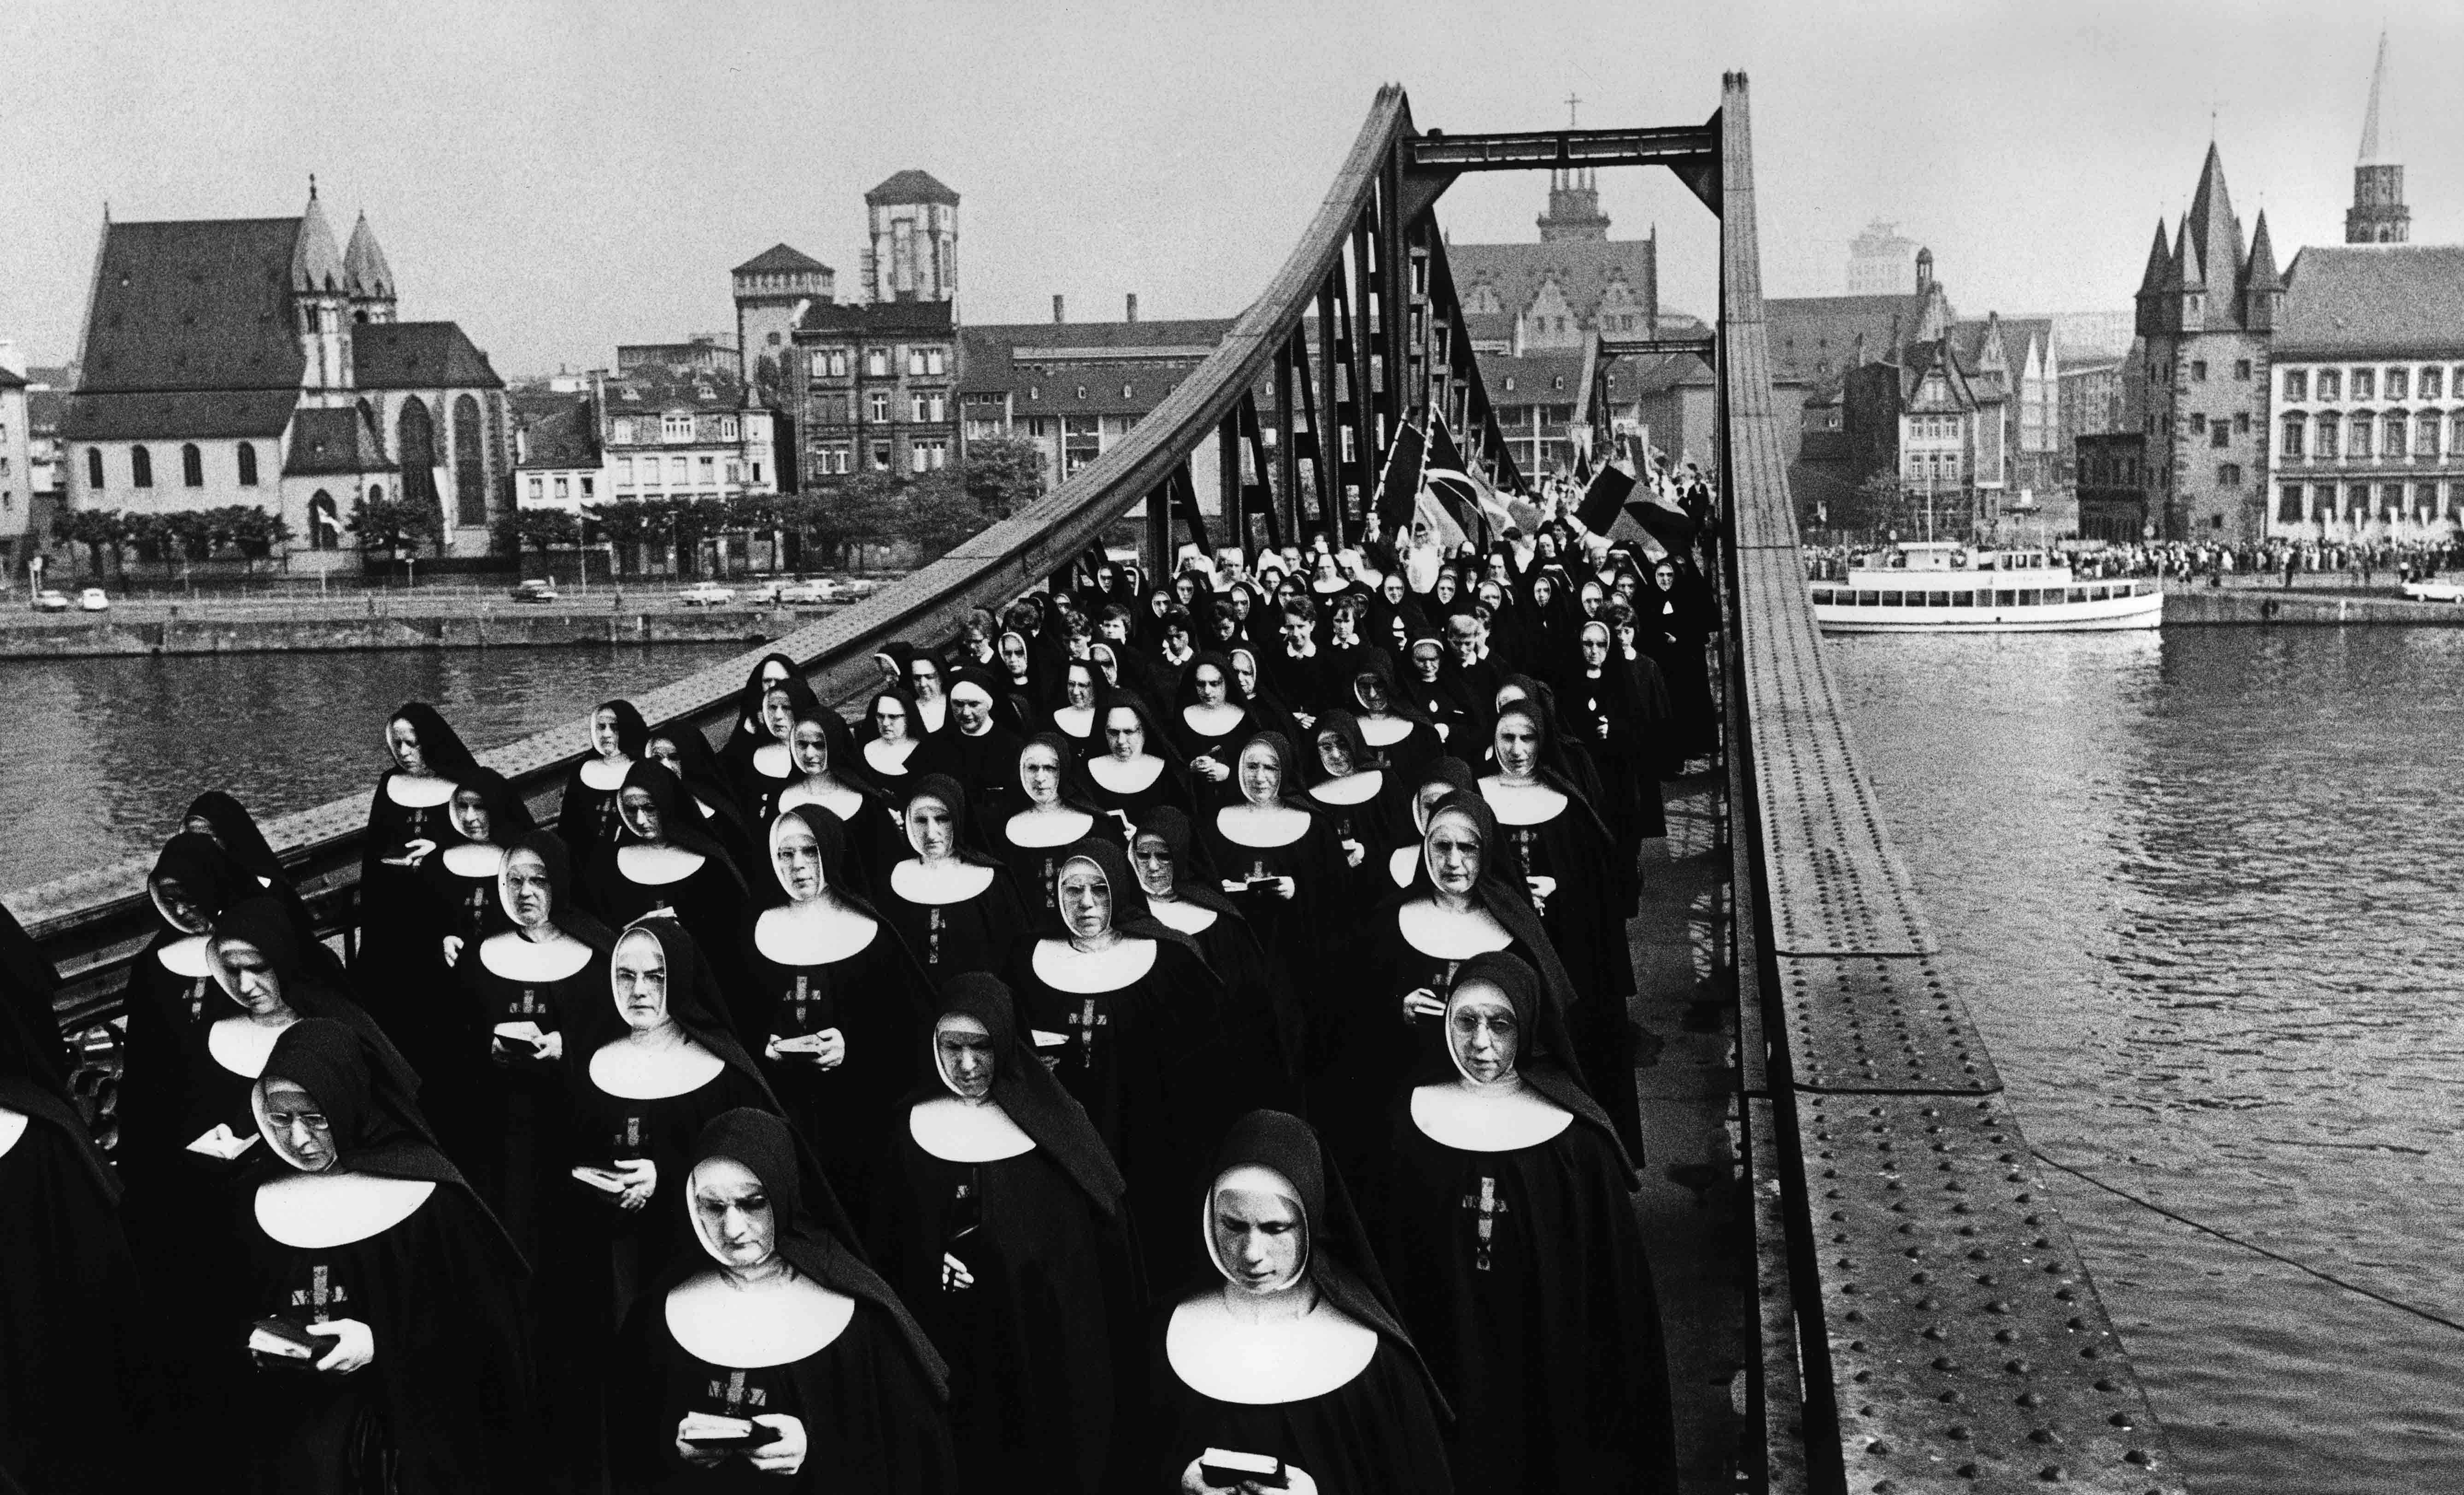 Schwarz-weiß Fotografie, die eine Gruppe lesender Nonnen auf einer Brücke zeigt.